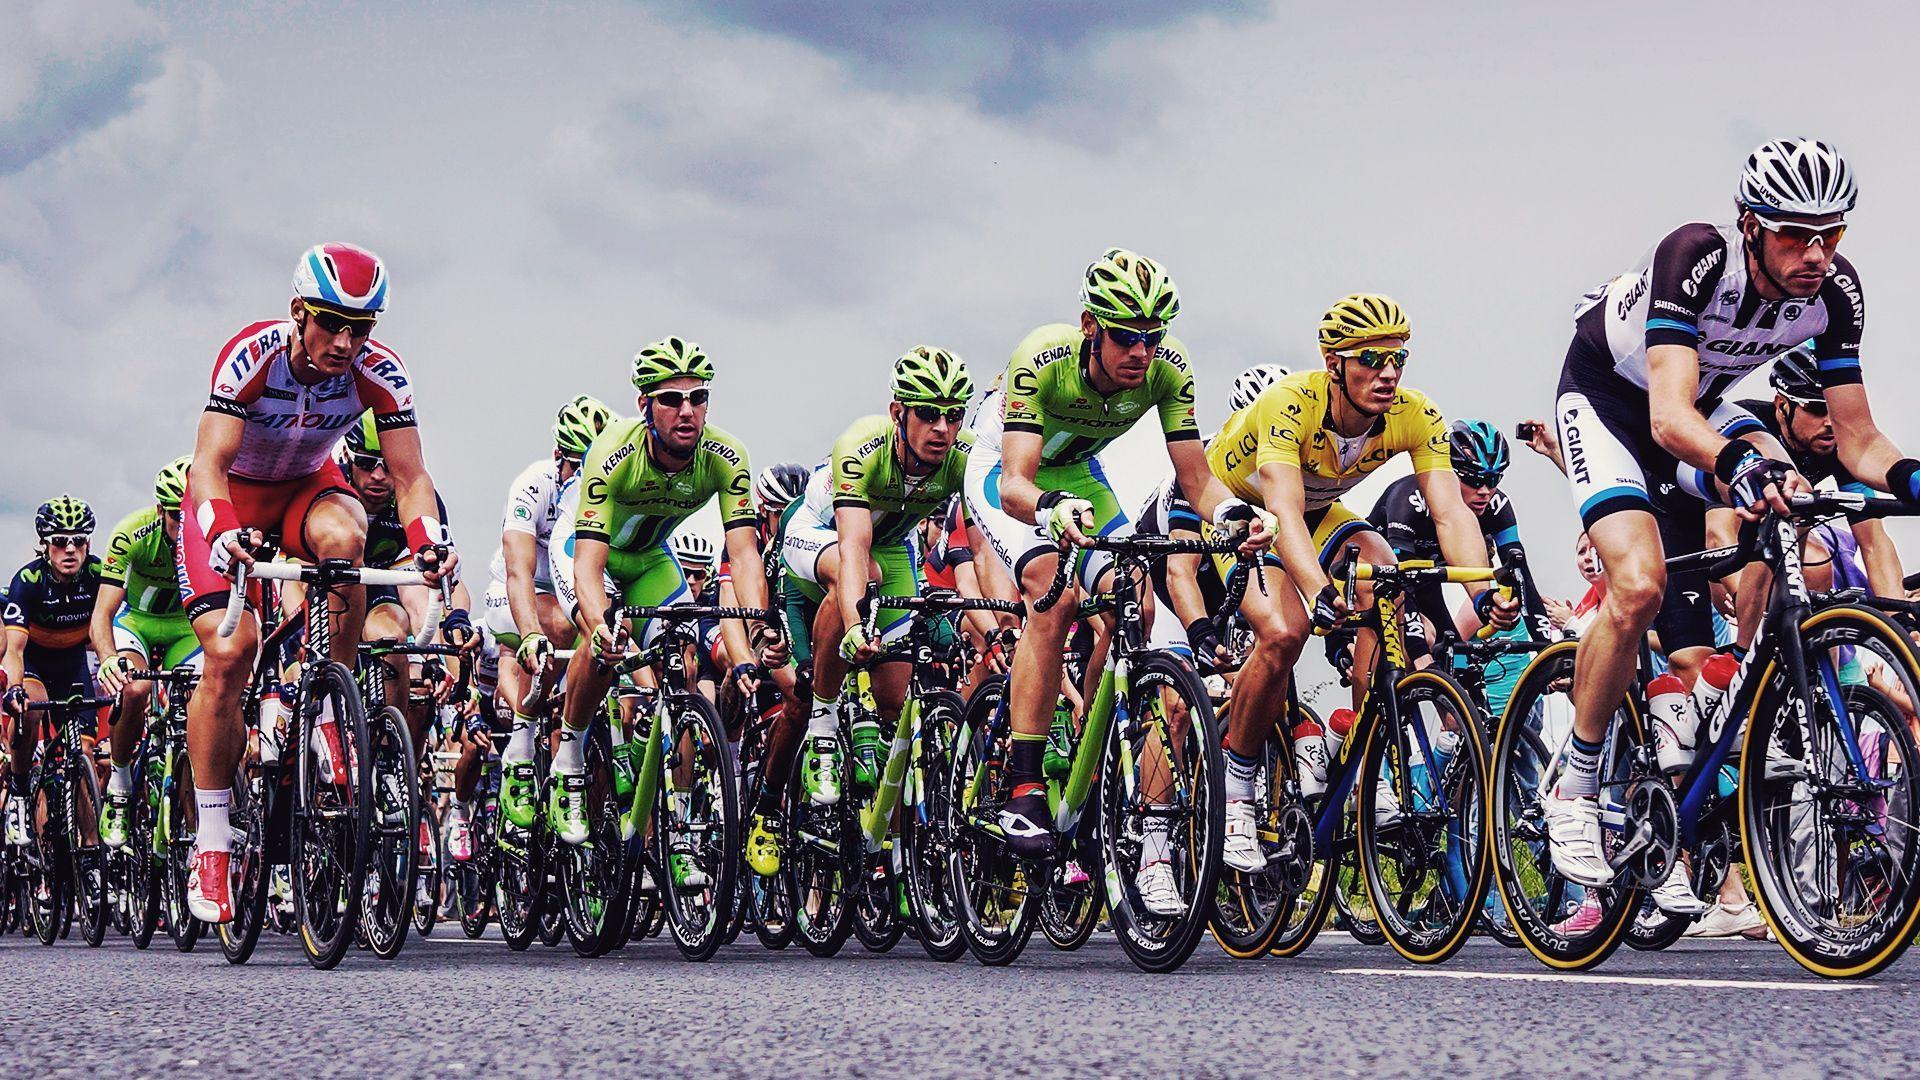 Picture This: The Tour de France